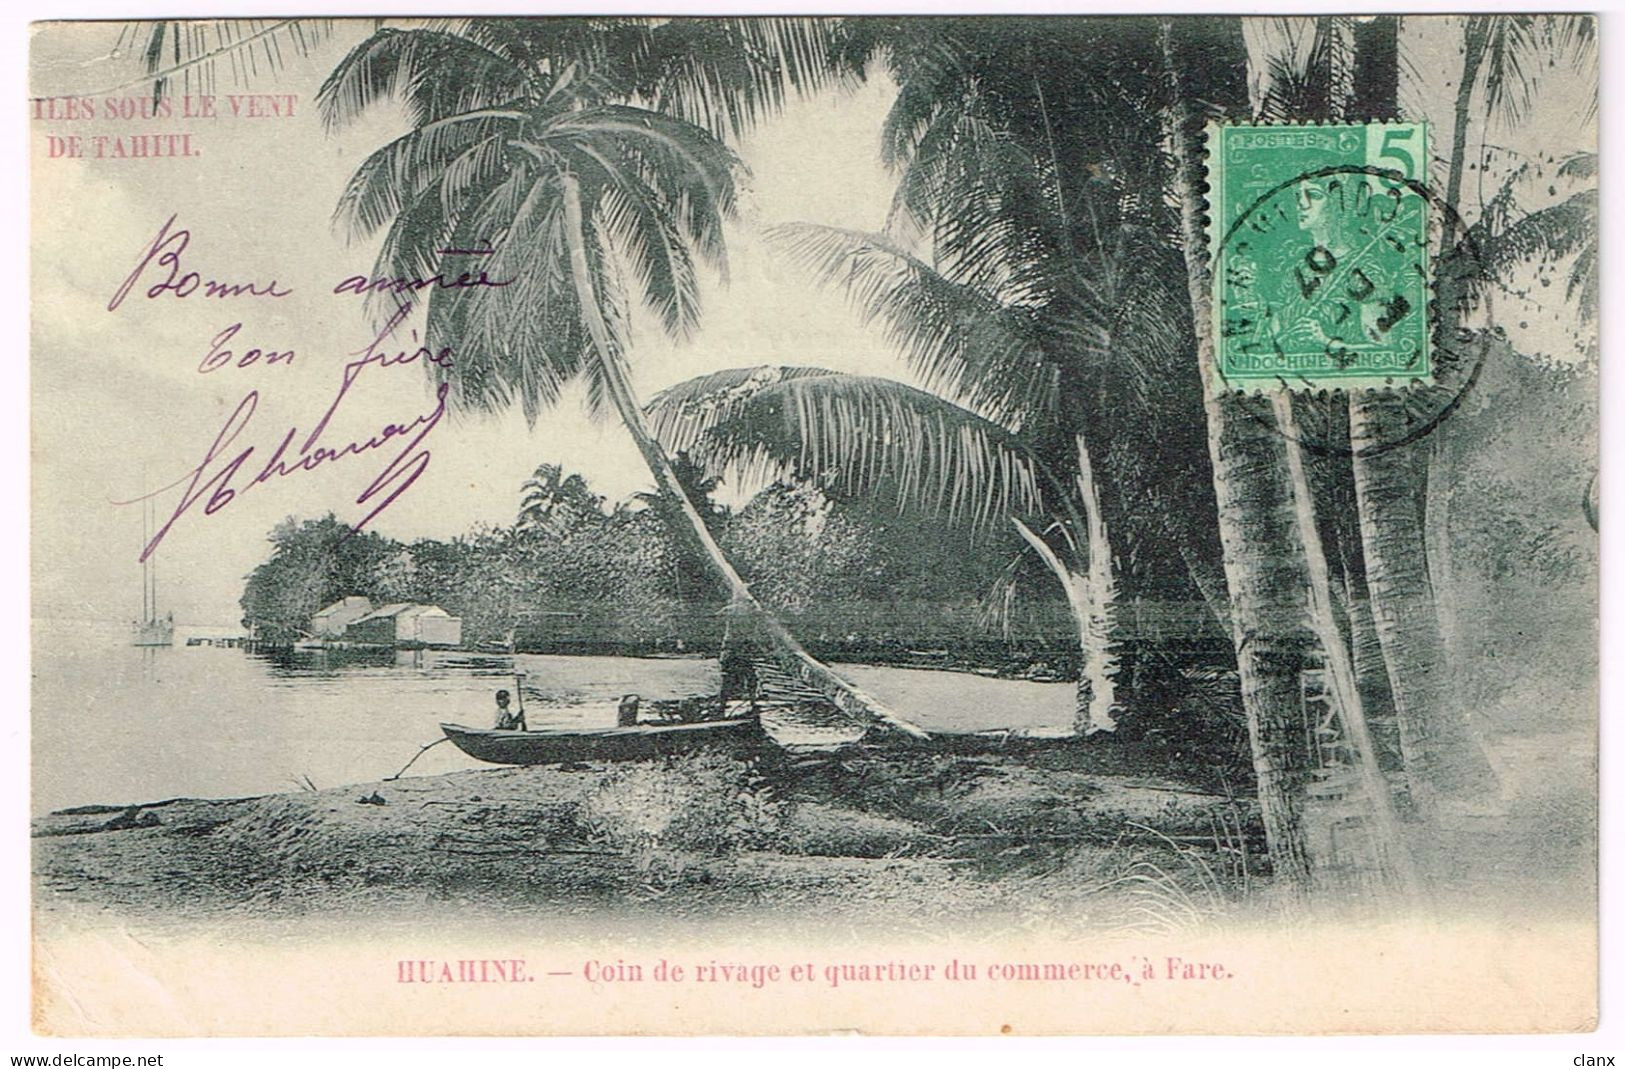 TAHITI 1907 Huahine - Coin De Rivage - Polynésie Française